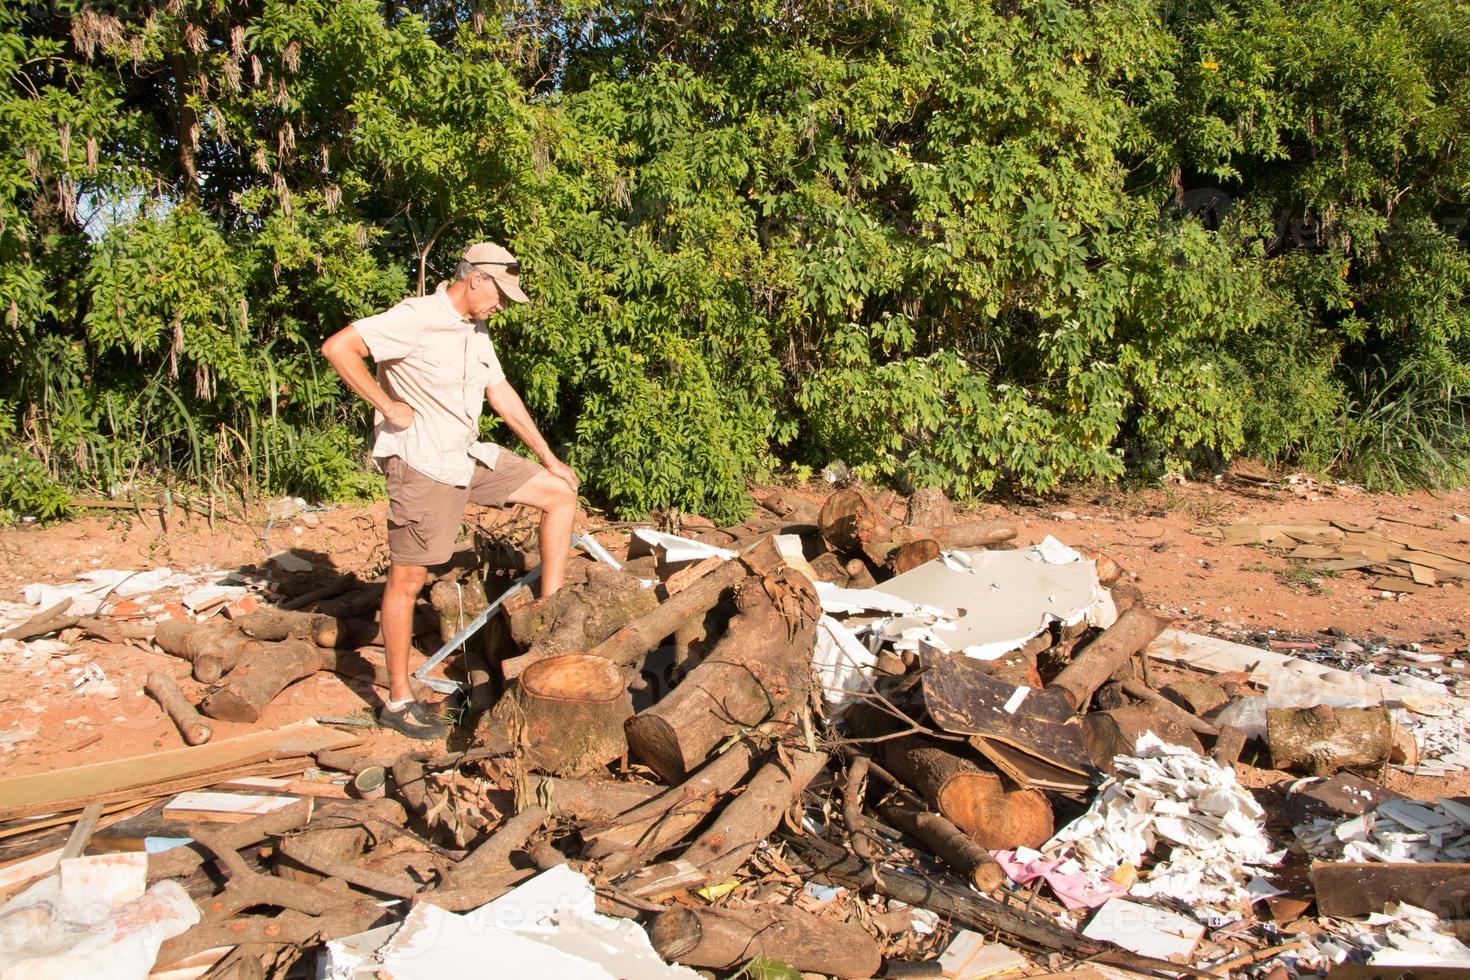 miljöpartist som inspekterar skräp och annat skräp som dumpats illegalt i stadsgränserna i Brasilien, Brasilien foto